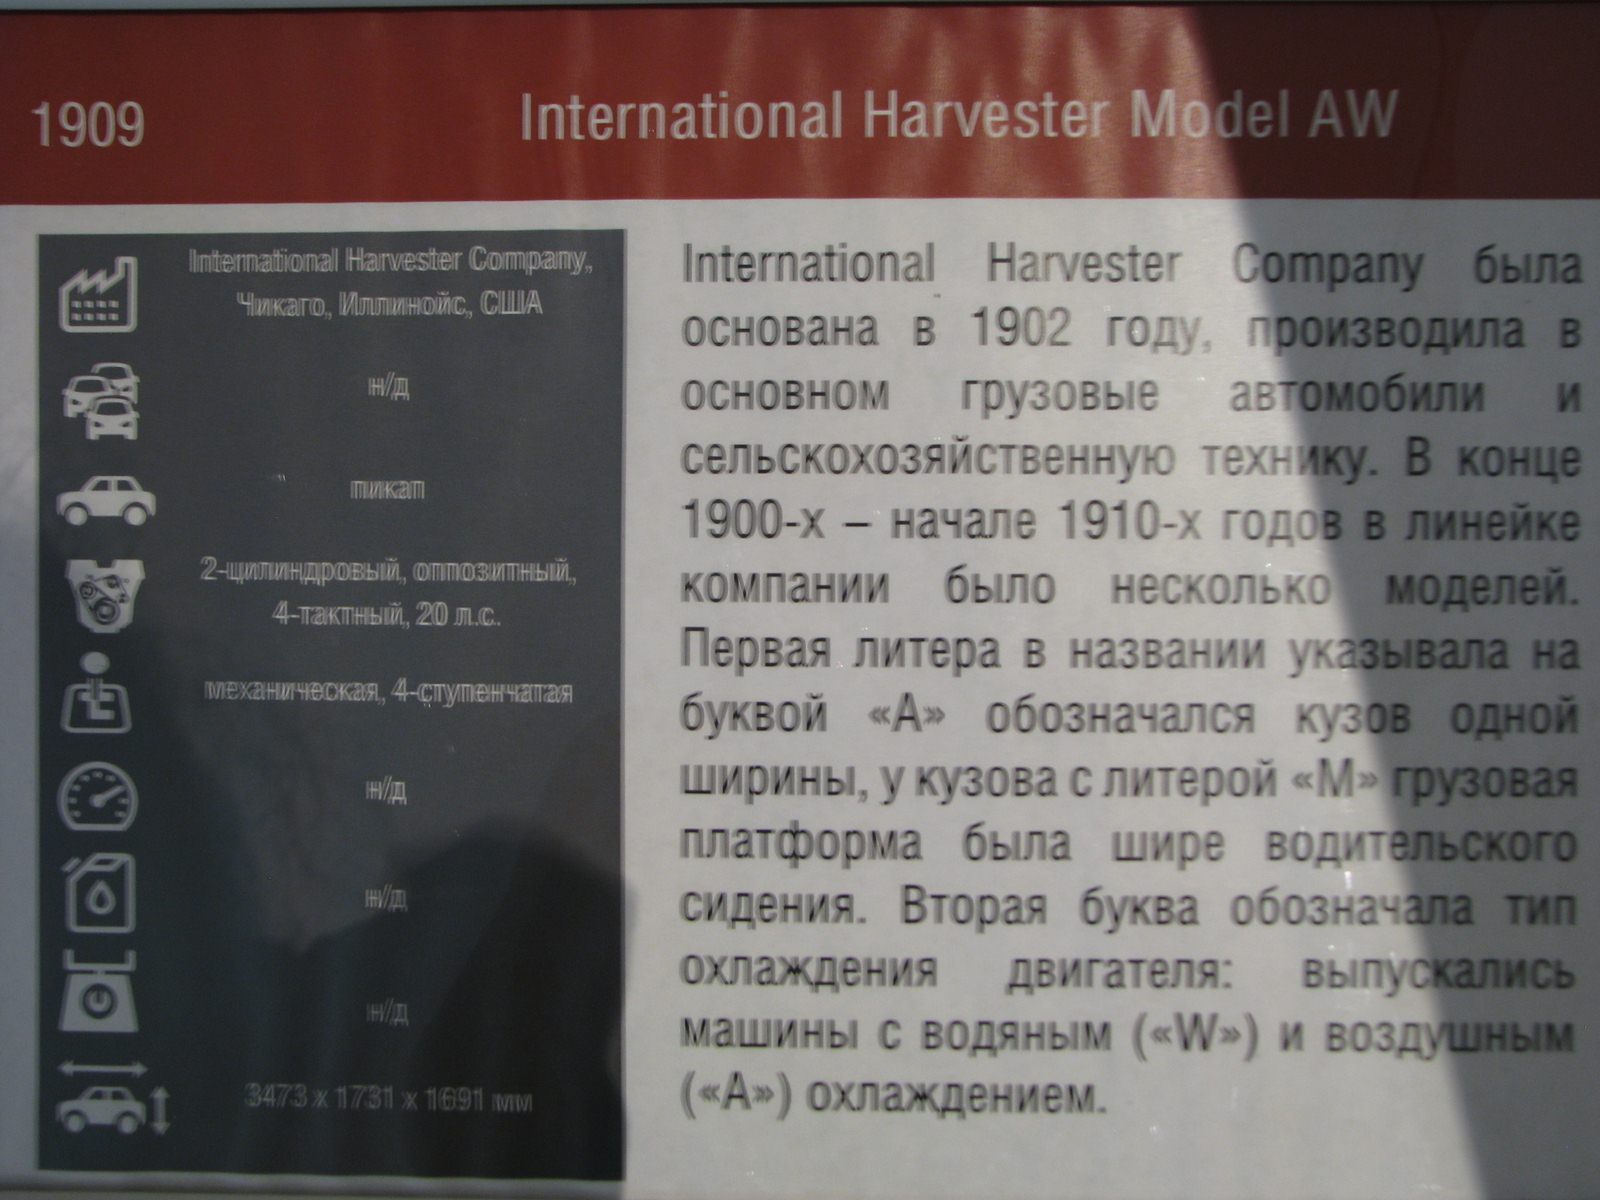 1909. International Harvester Model AW